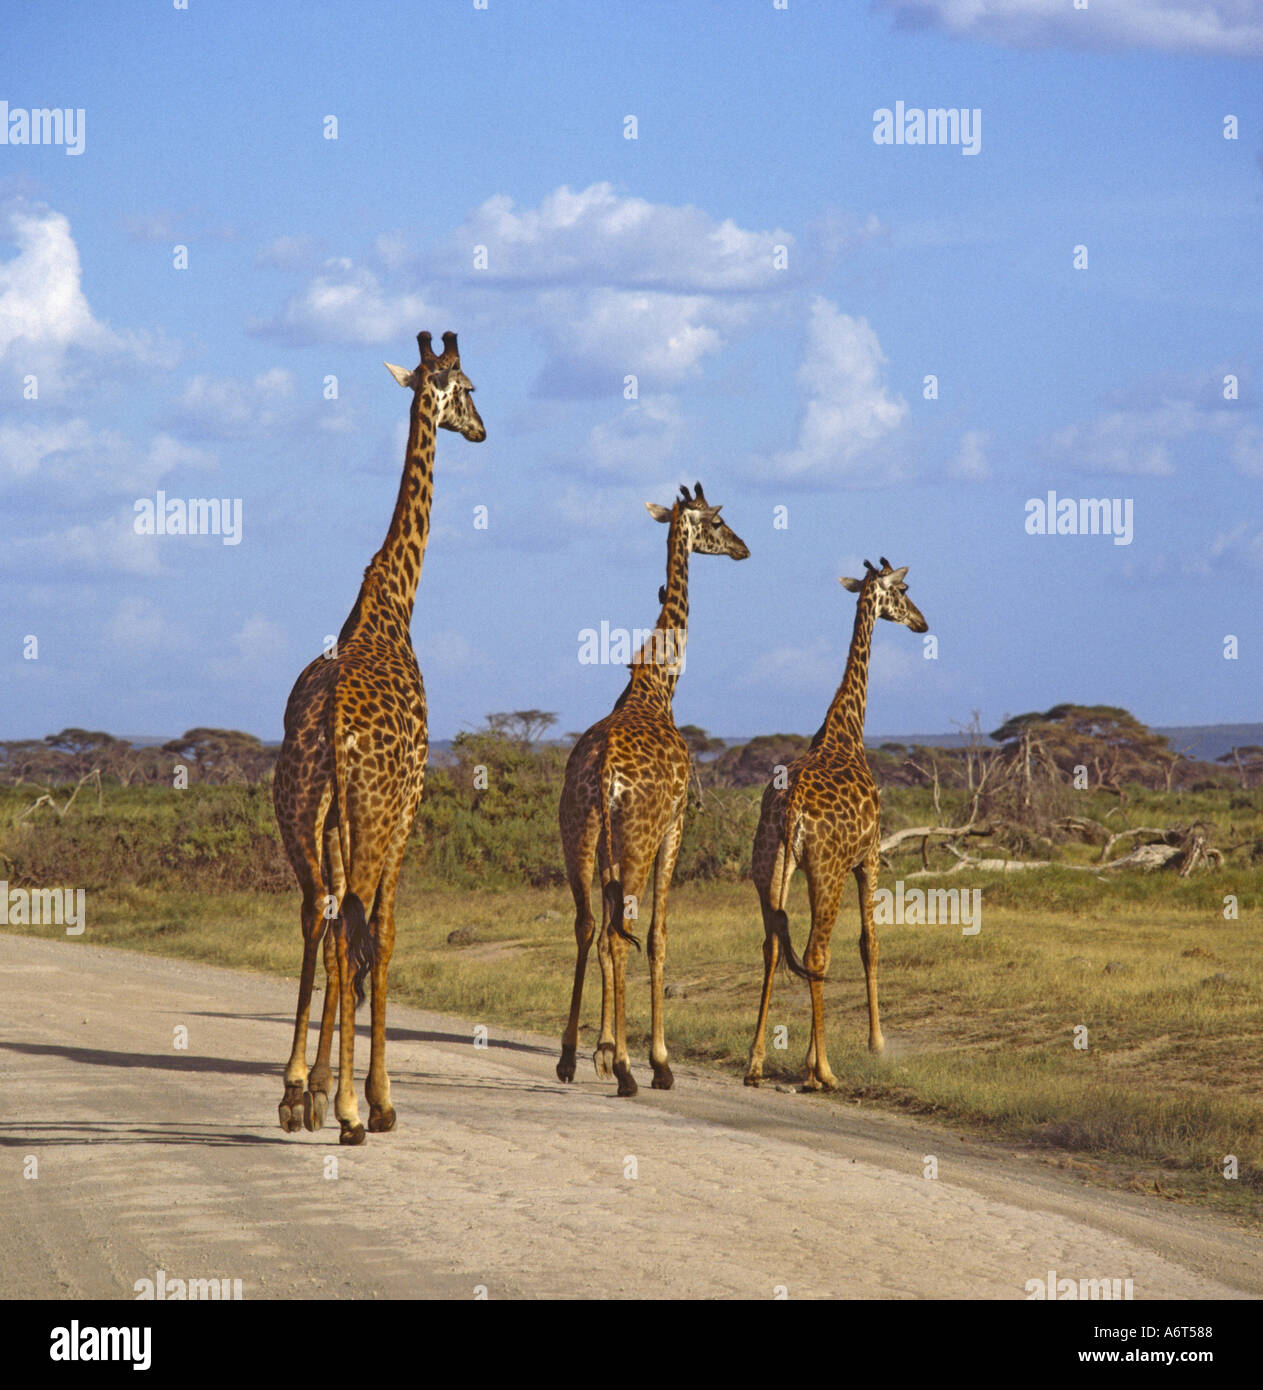 Trois girafes balade en ligne unique à travers un chemin de terre dans la brousse africaine dans le Parc national Amboseli au Kenya Banque D'Images